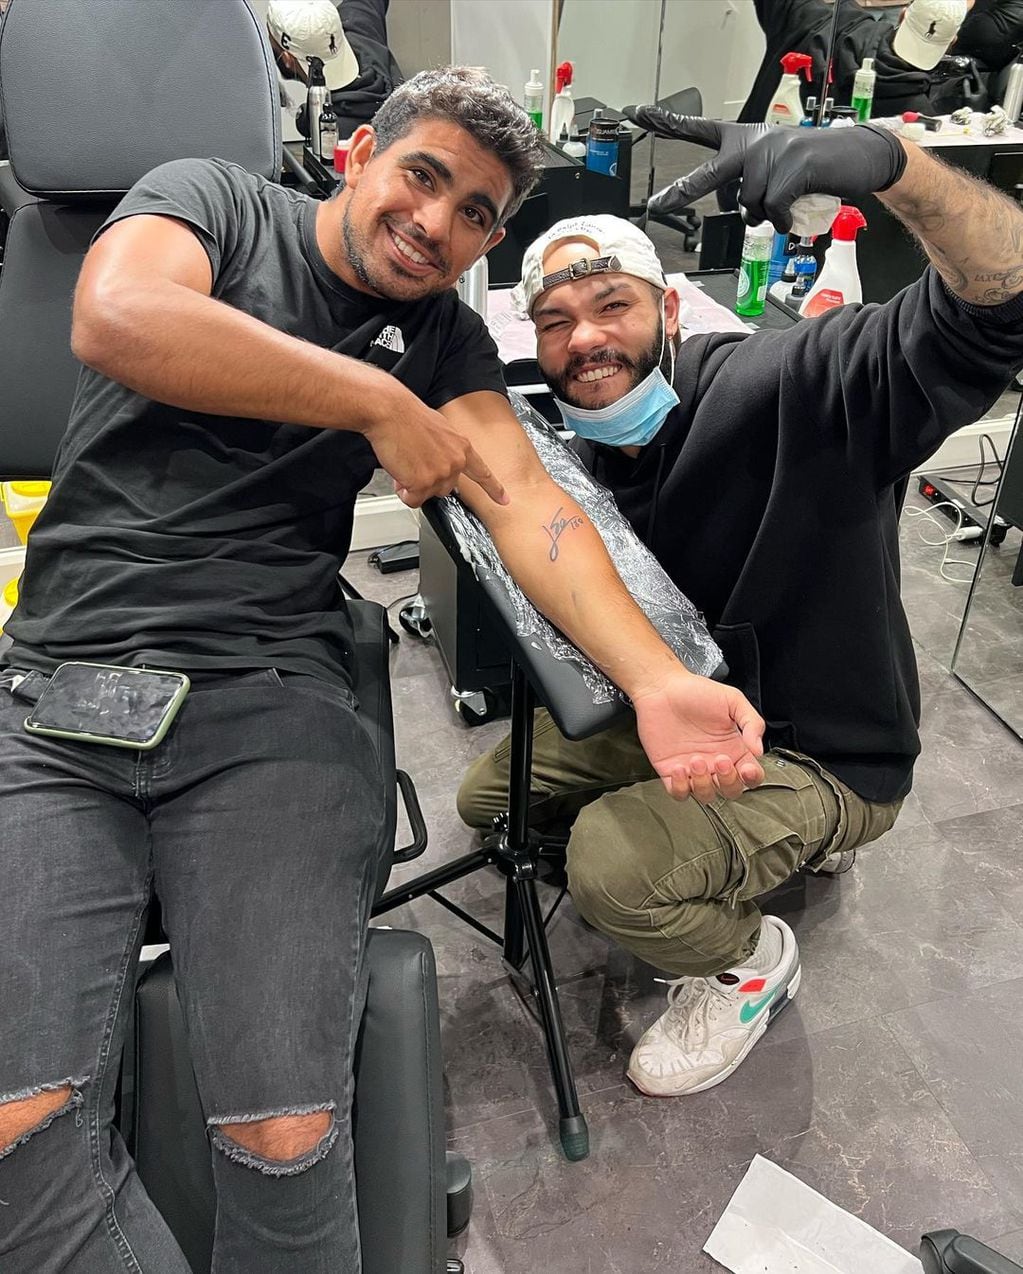 El profesor de educación física se tatuó la firma de Messi en el brazo.